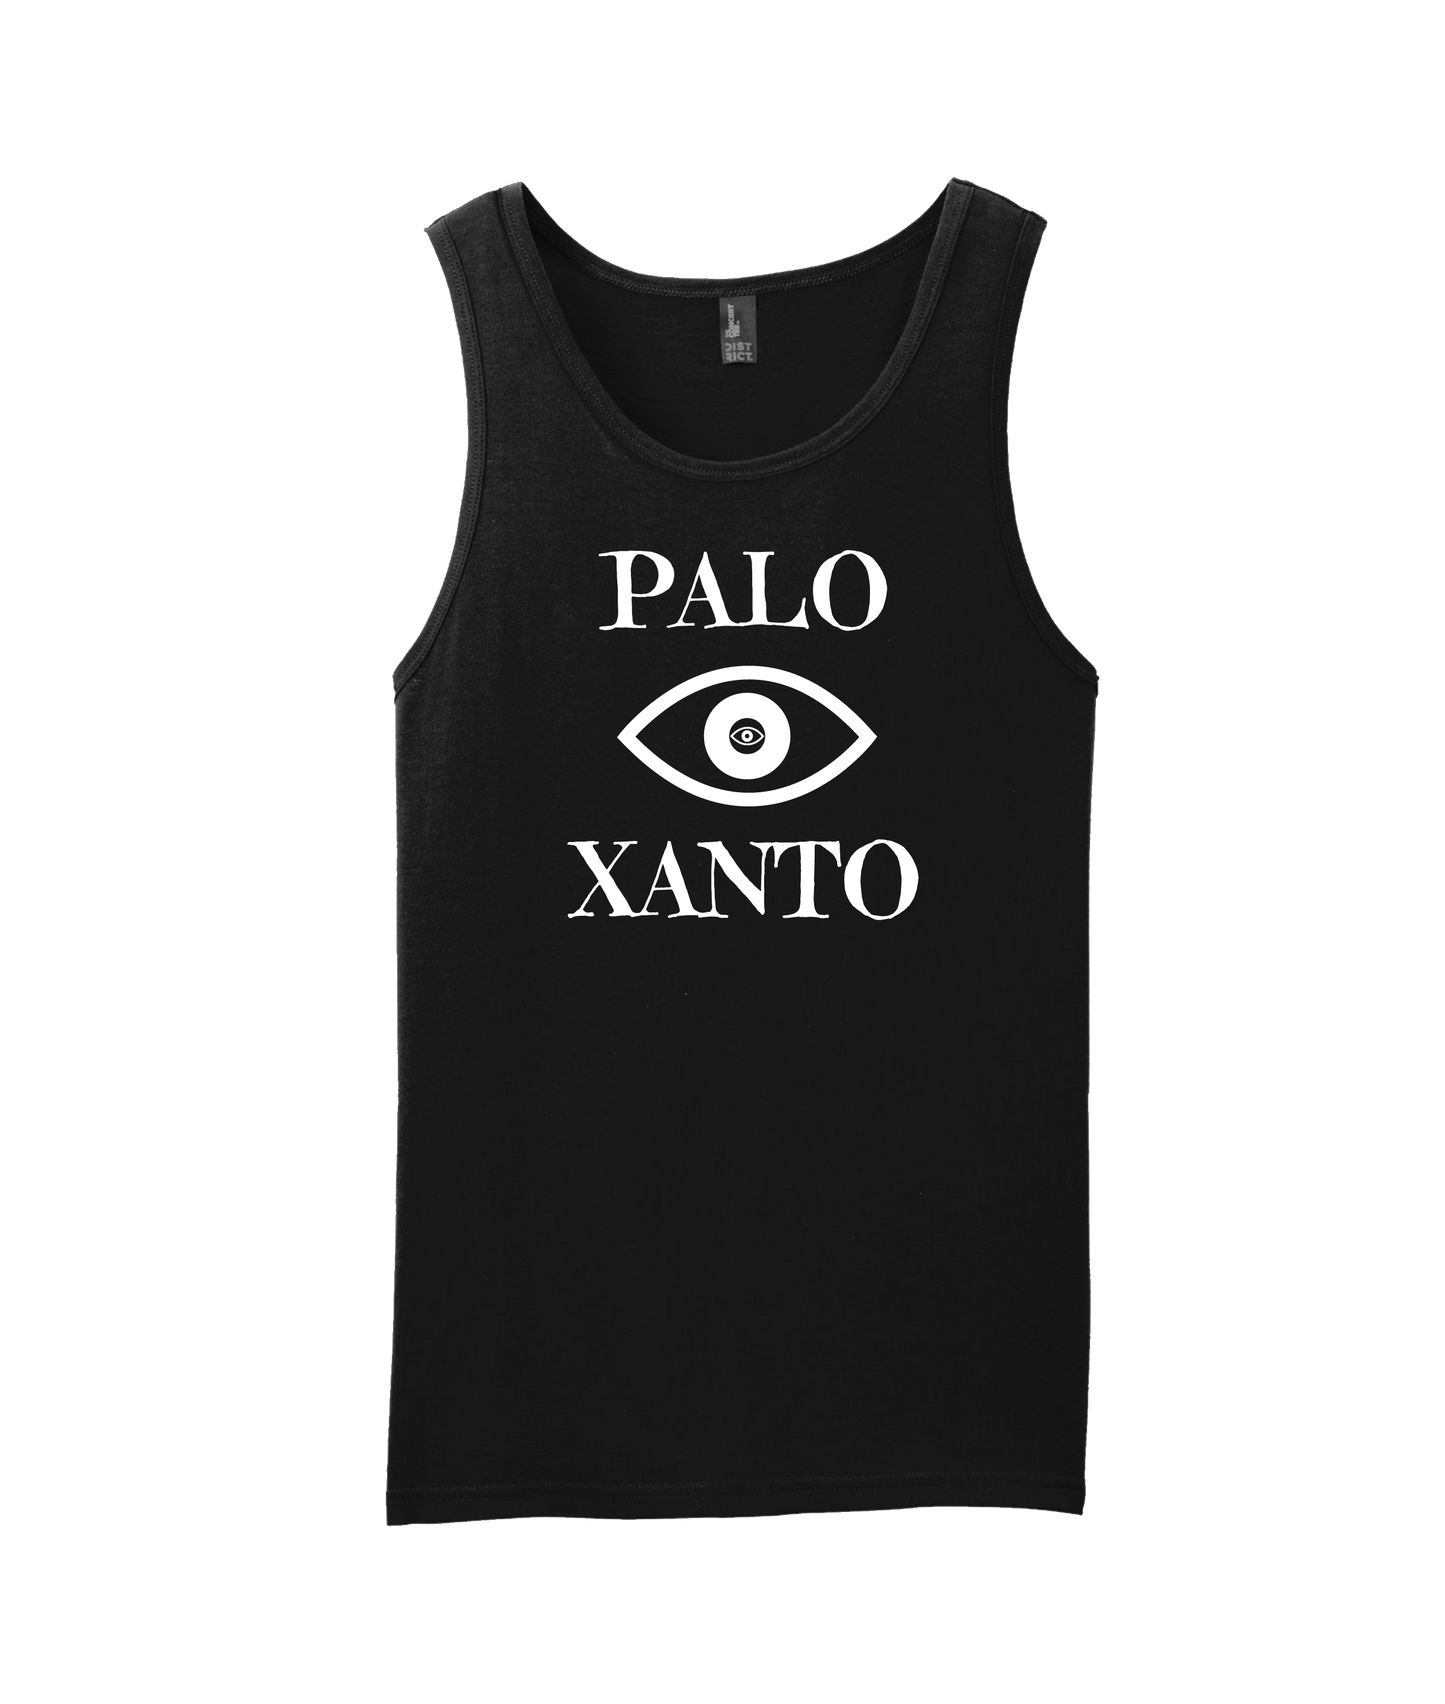 Palo Xanto - Eye - Black Tank Top